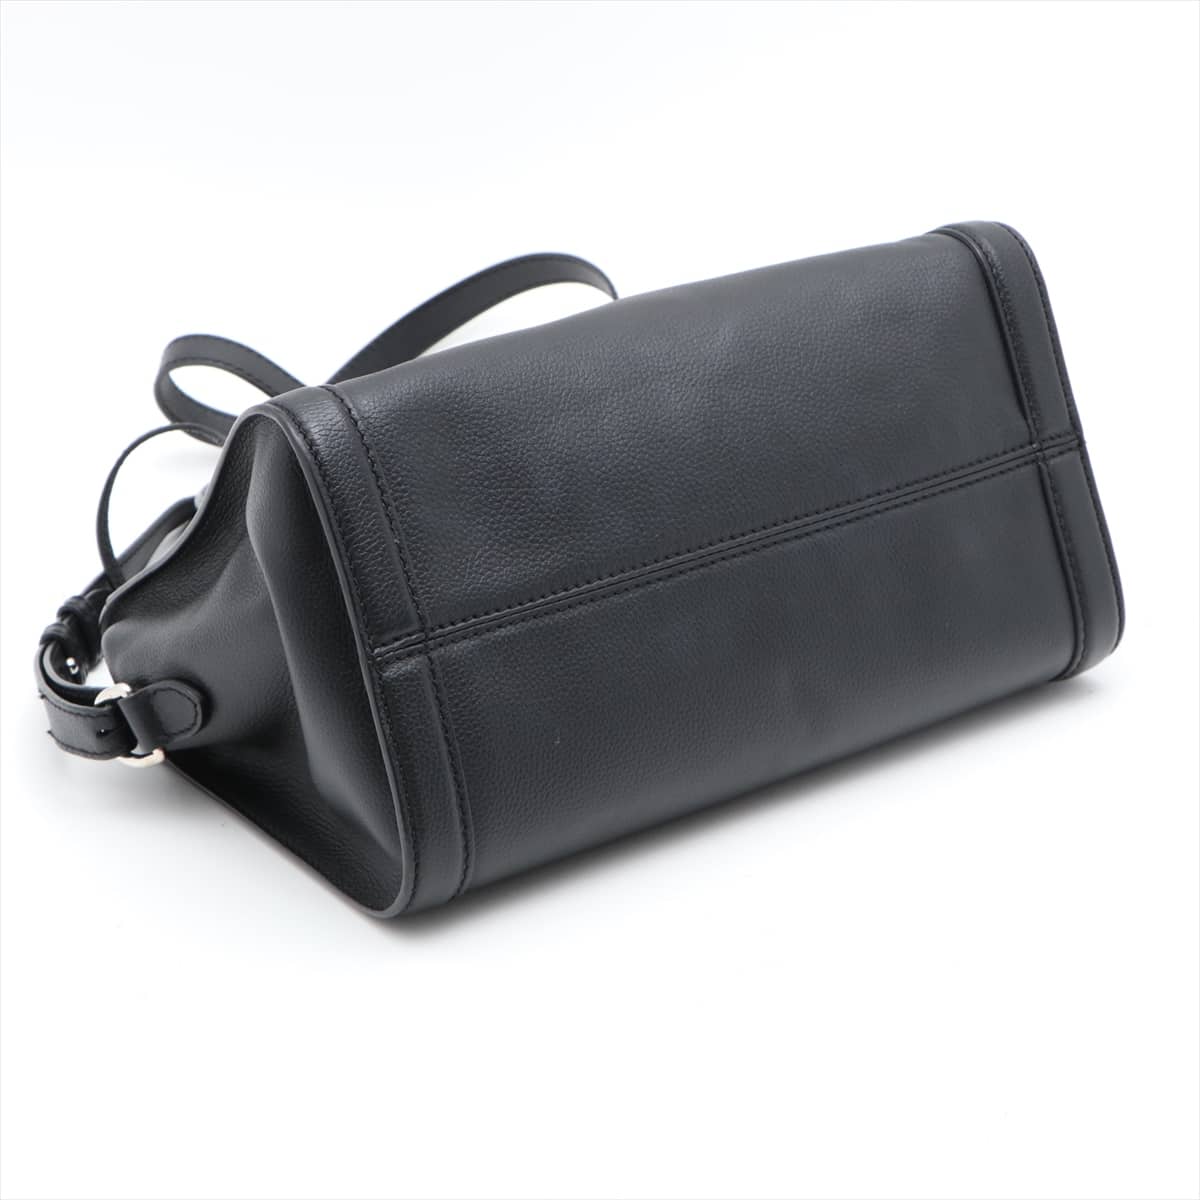 Alexander McQueen Leather 2way shoulder bag Black